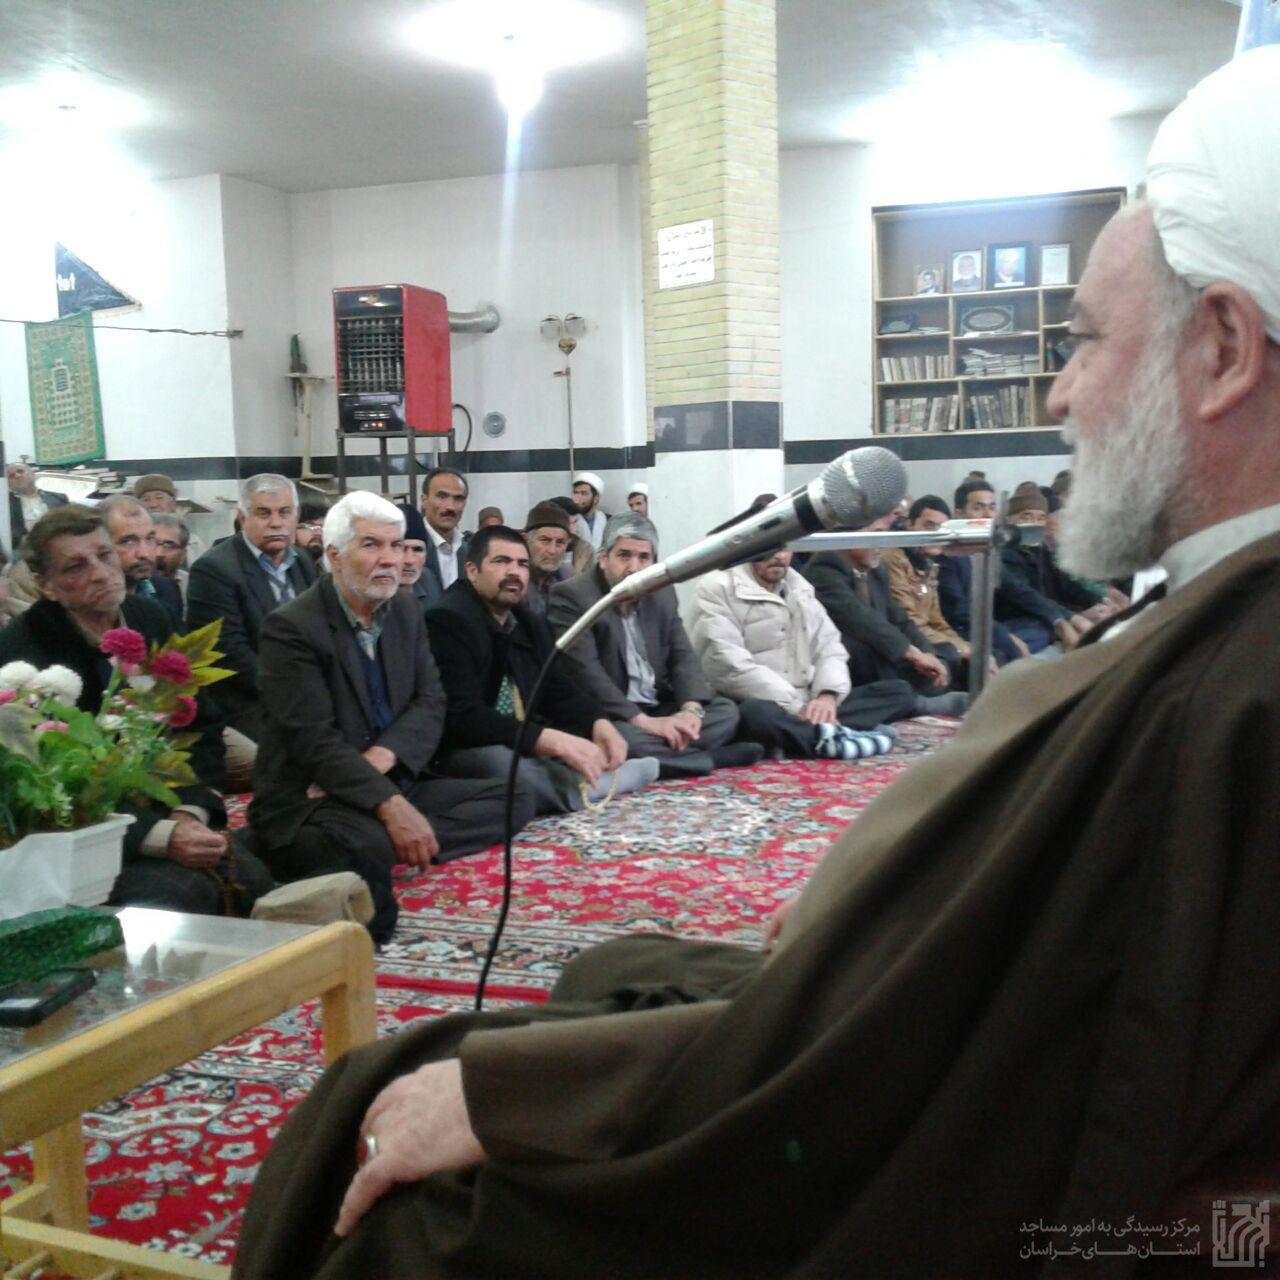 گزارش تصویری  ازهمایش مسجد هسته مقاومت  فرهنگی (خراسان شمالی )photo_2017-03-14_15-56-46.jpg